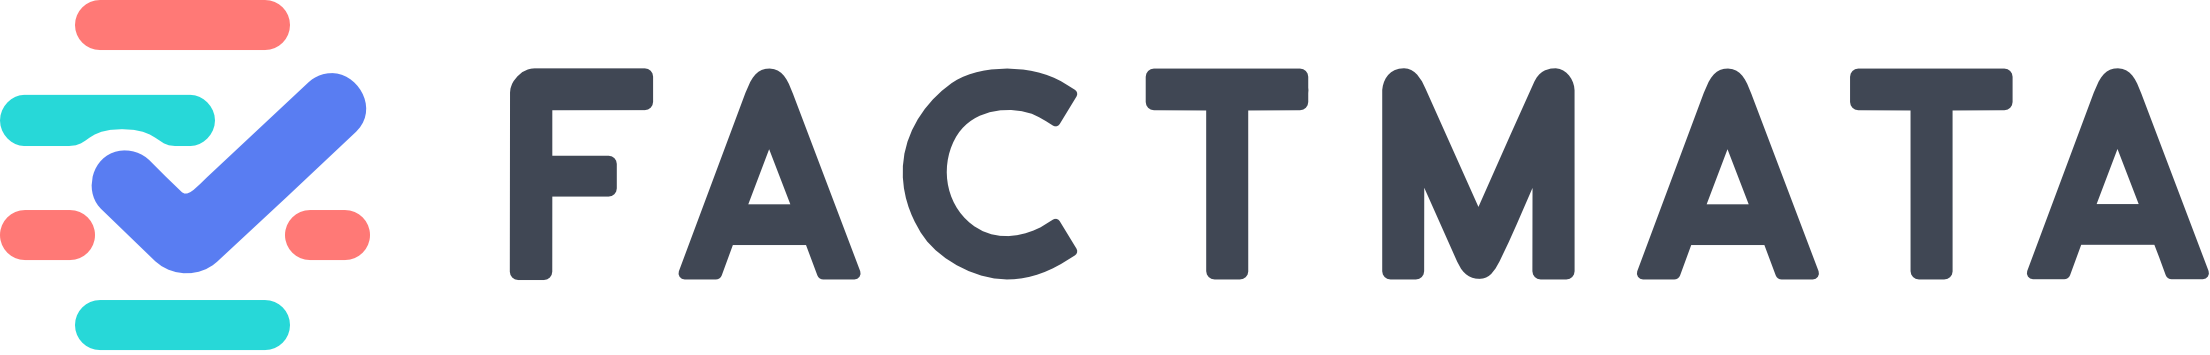 Factmata logo